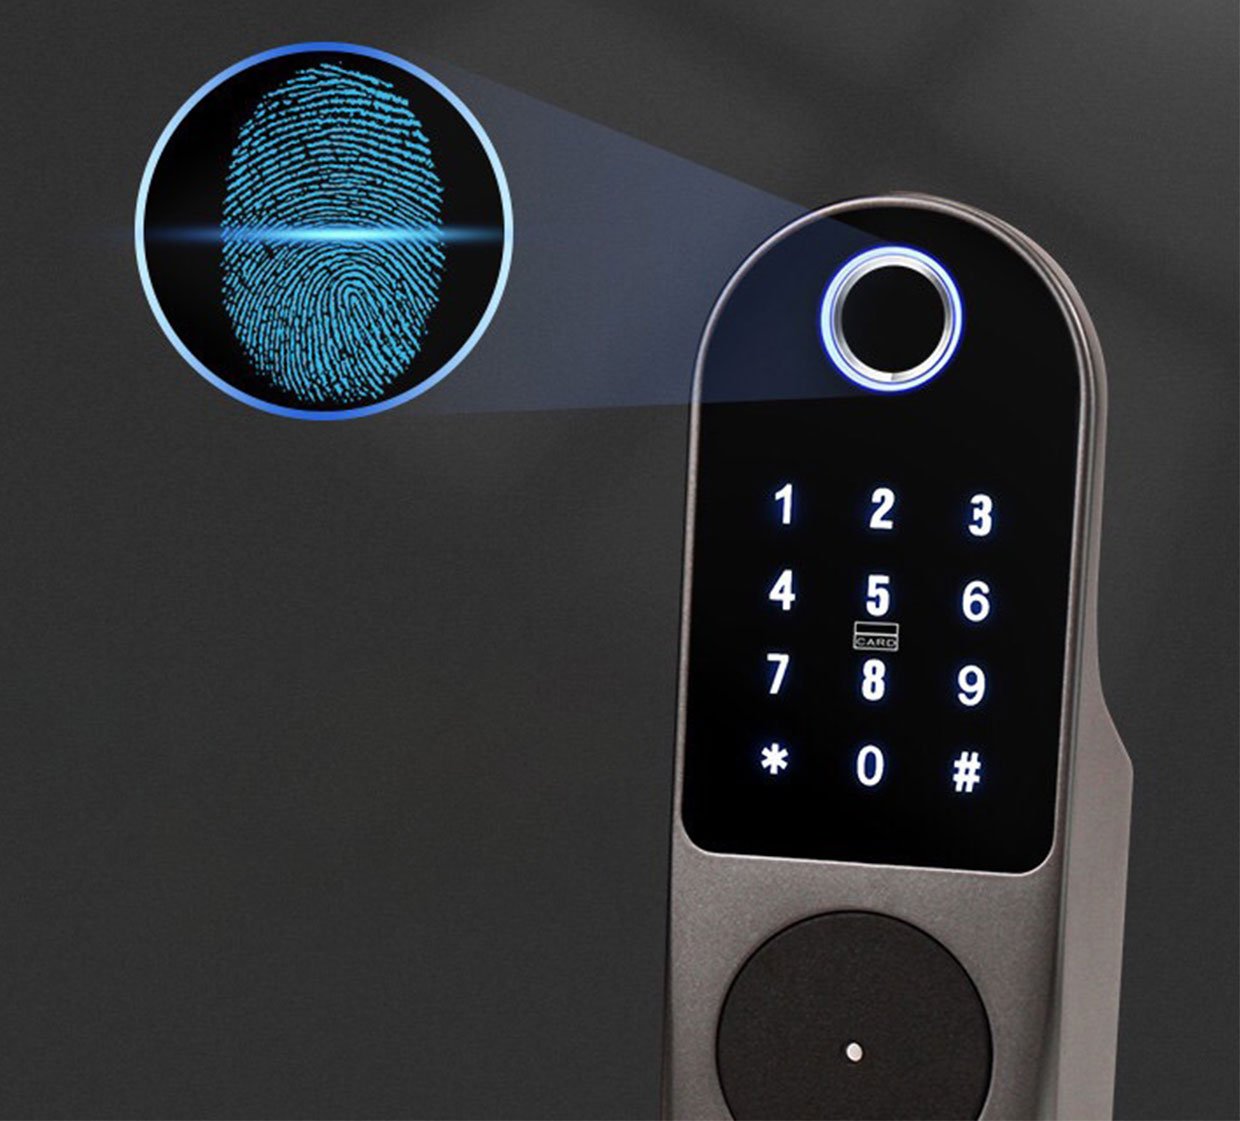 Smart Home Fingerprint Lock